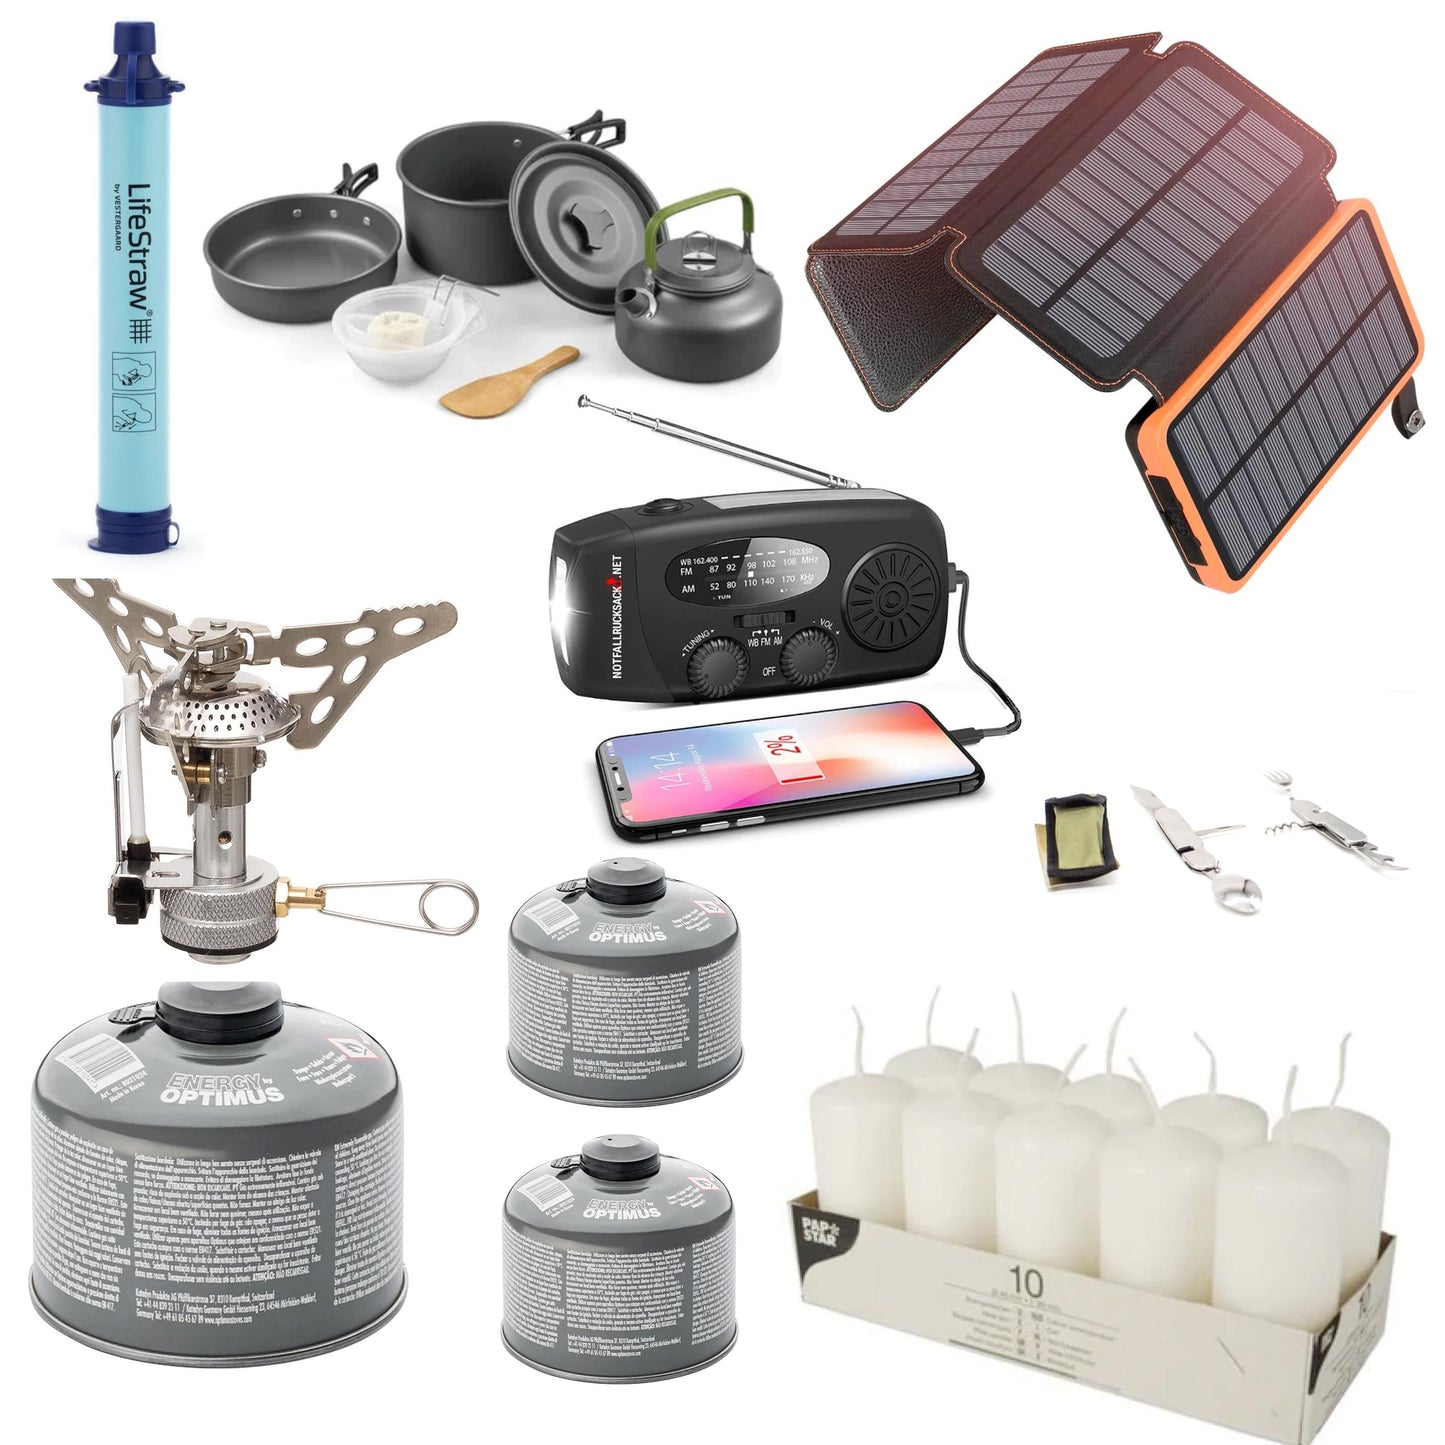 Sähkökatkospaketti Extreme Blackout -sarja - megavoimala, aurinkopaneeli, kaasuliesi, keittosarja, ruokailuvälineet, aurinkopankki, vedensuodatin, kynttilät ja paljon muuta